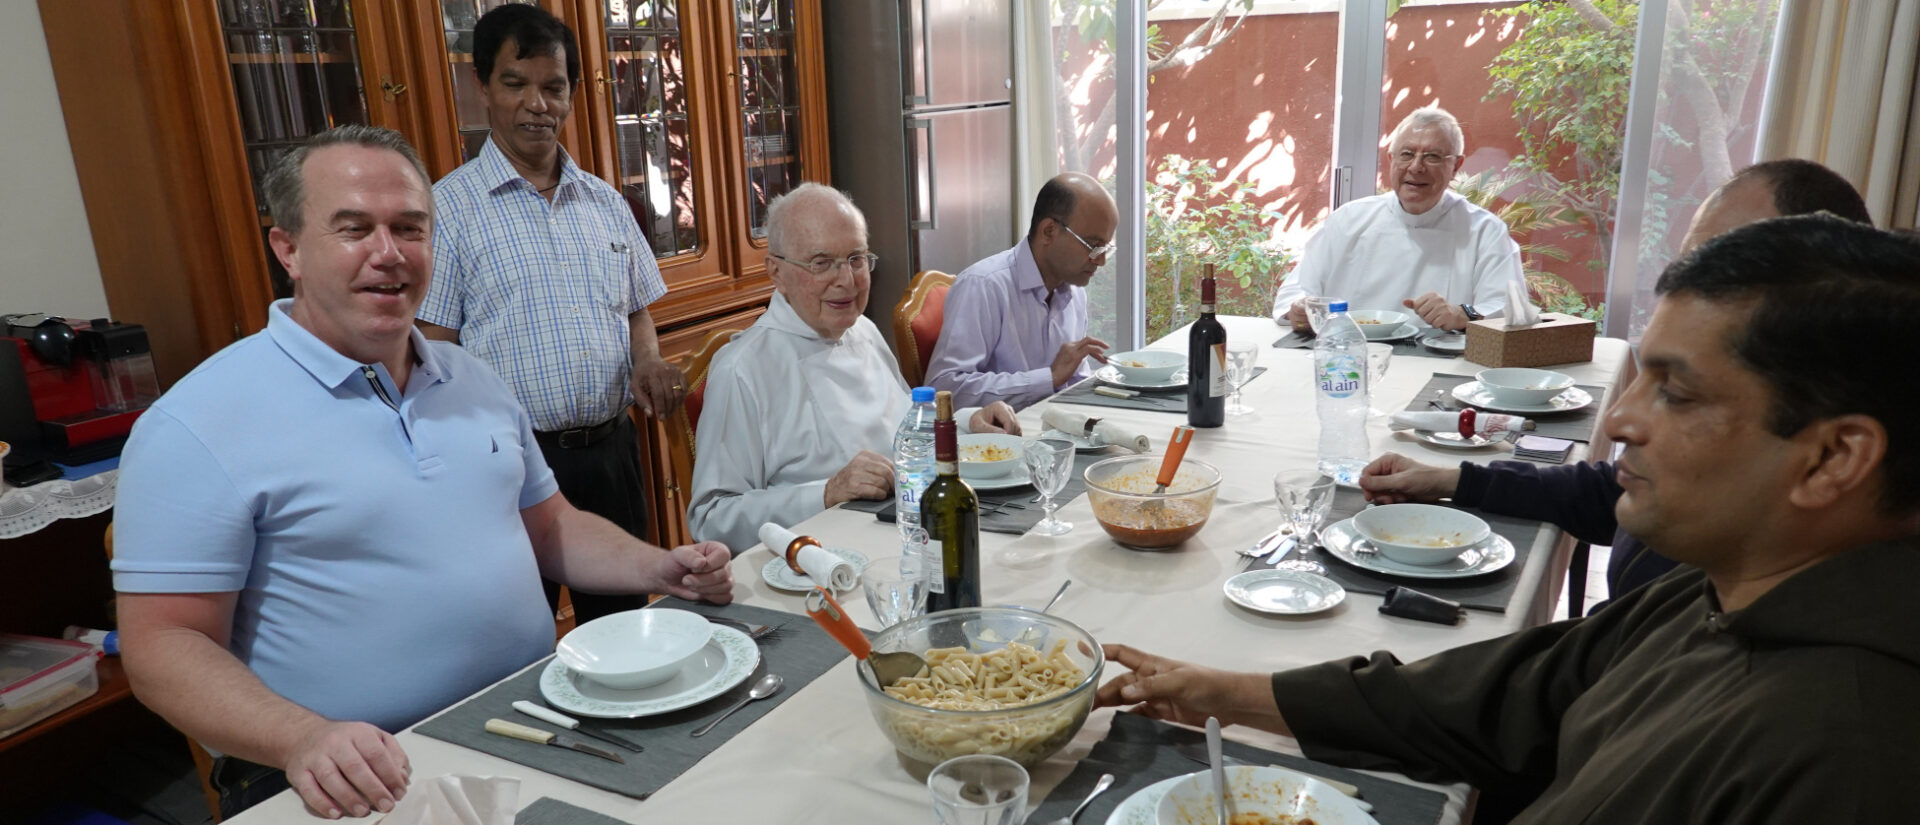 Mittagessen in Abu Dhabi: Links der jetzige Zürcher Synodalrat Martin Stewen, Gandolf Wild, rechts hinten Bischof Paul Hinder.